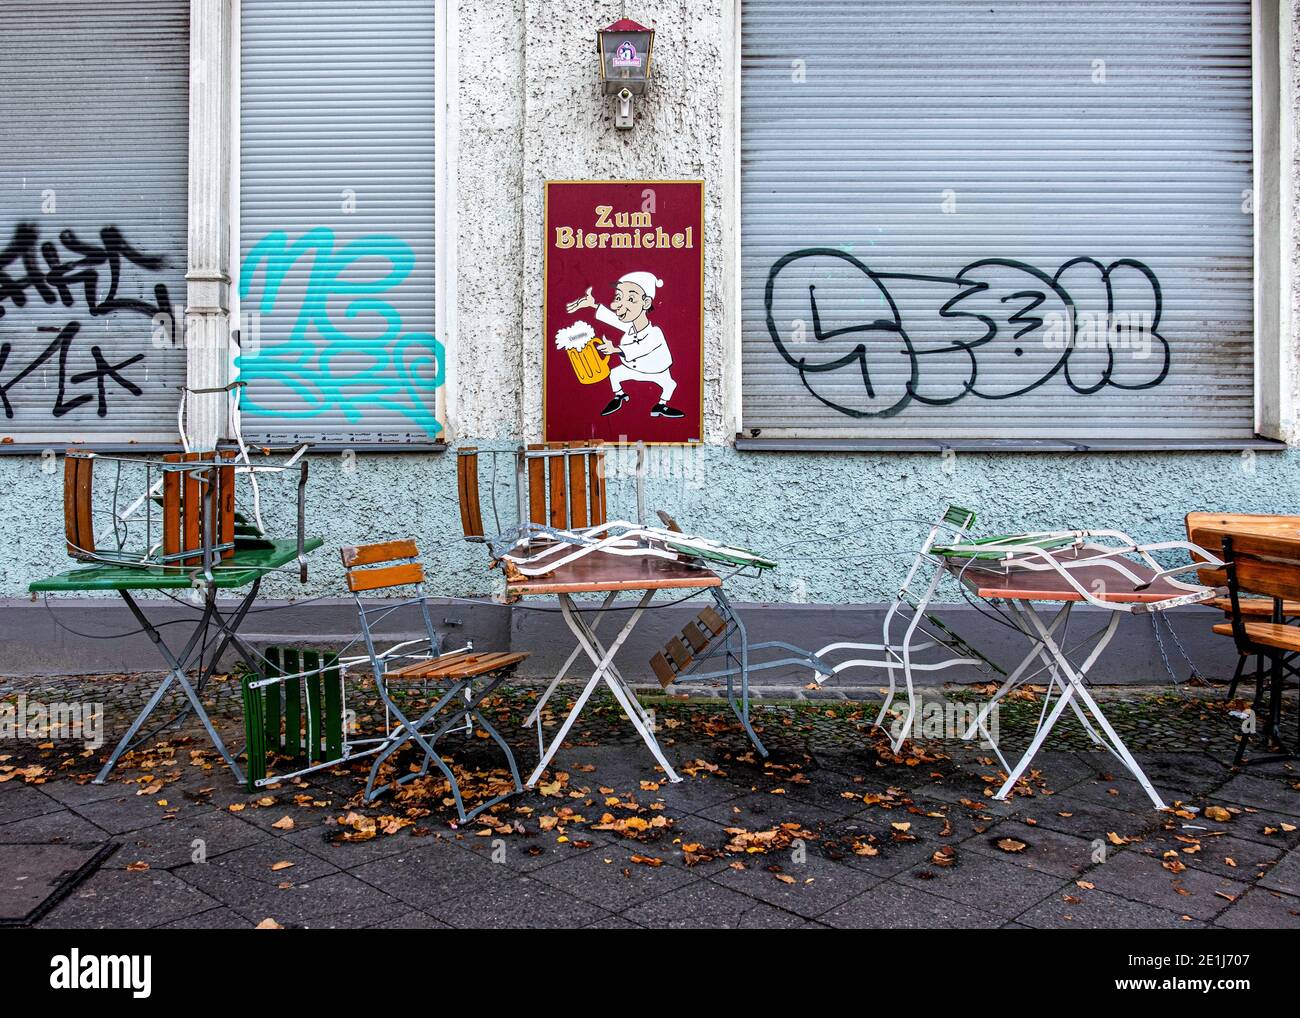 Berlin, Mitte, zum Biermichel traditionelle deutsche Eckkneipe, typische lokale Bar. Das altmodische deutsche Pub war während der Corona-Pandemie geschlossen Stockfoto